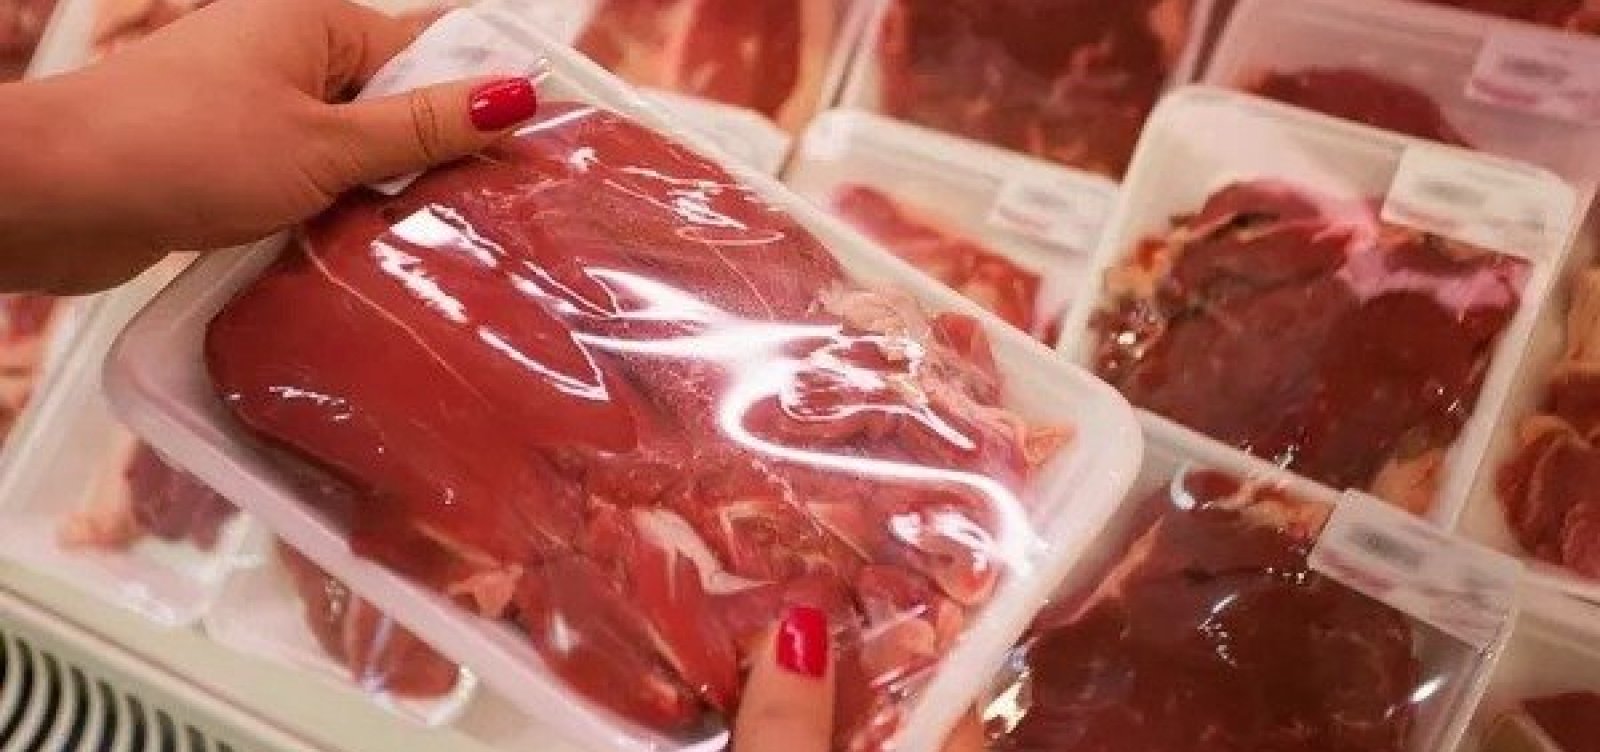 Consumo de carne bovina deve cair ao menor nível em 26 anos no Brasil, estima Conab